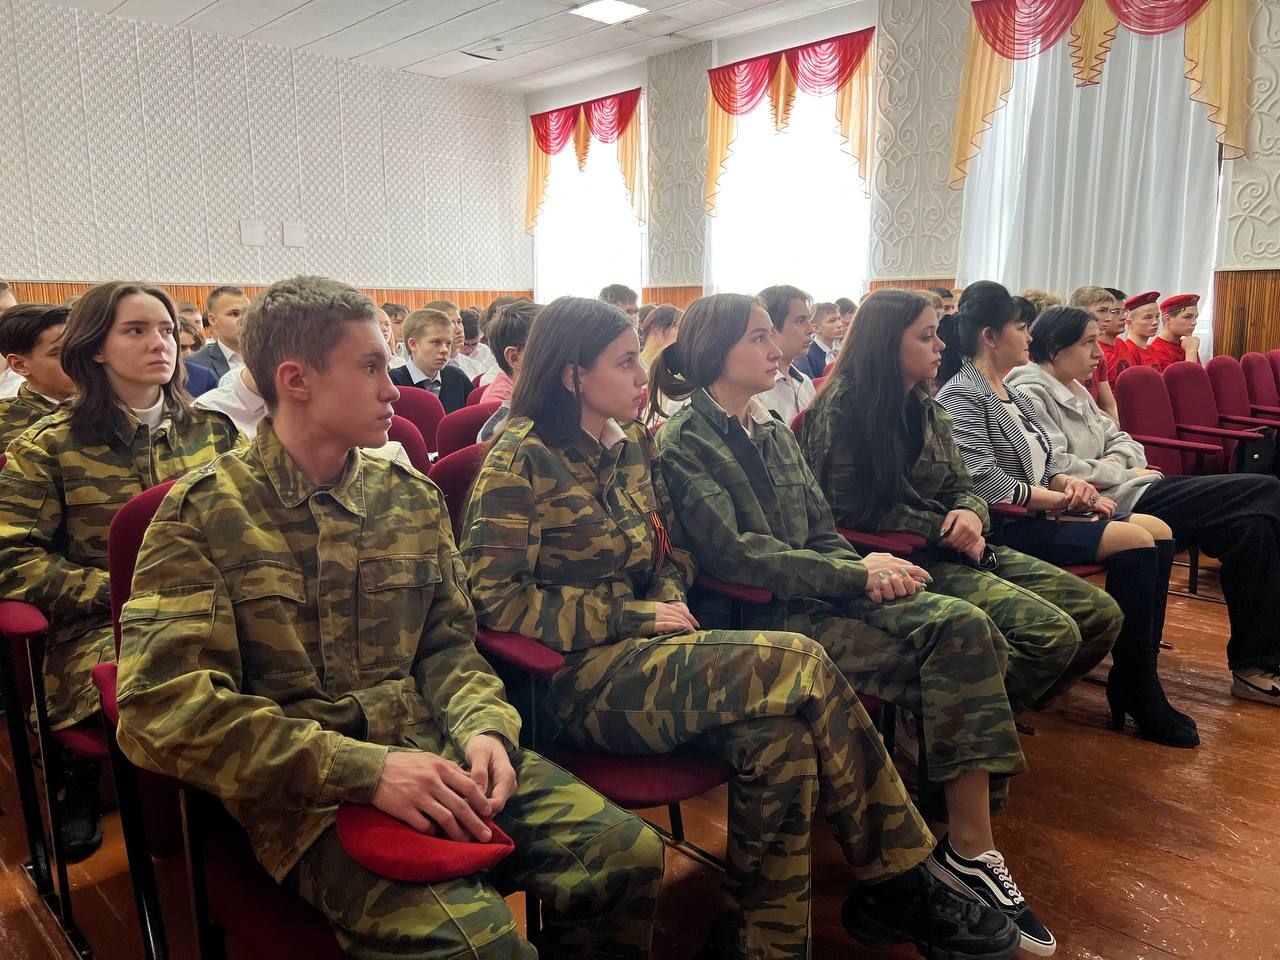 Генерал - майор запаса Анатолий Молоствов: «Выбирать профессию важно сердцем»